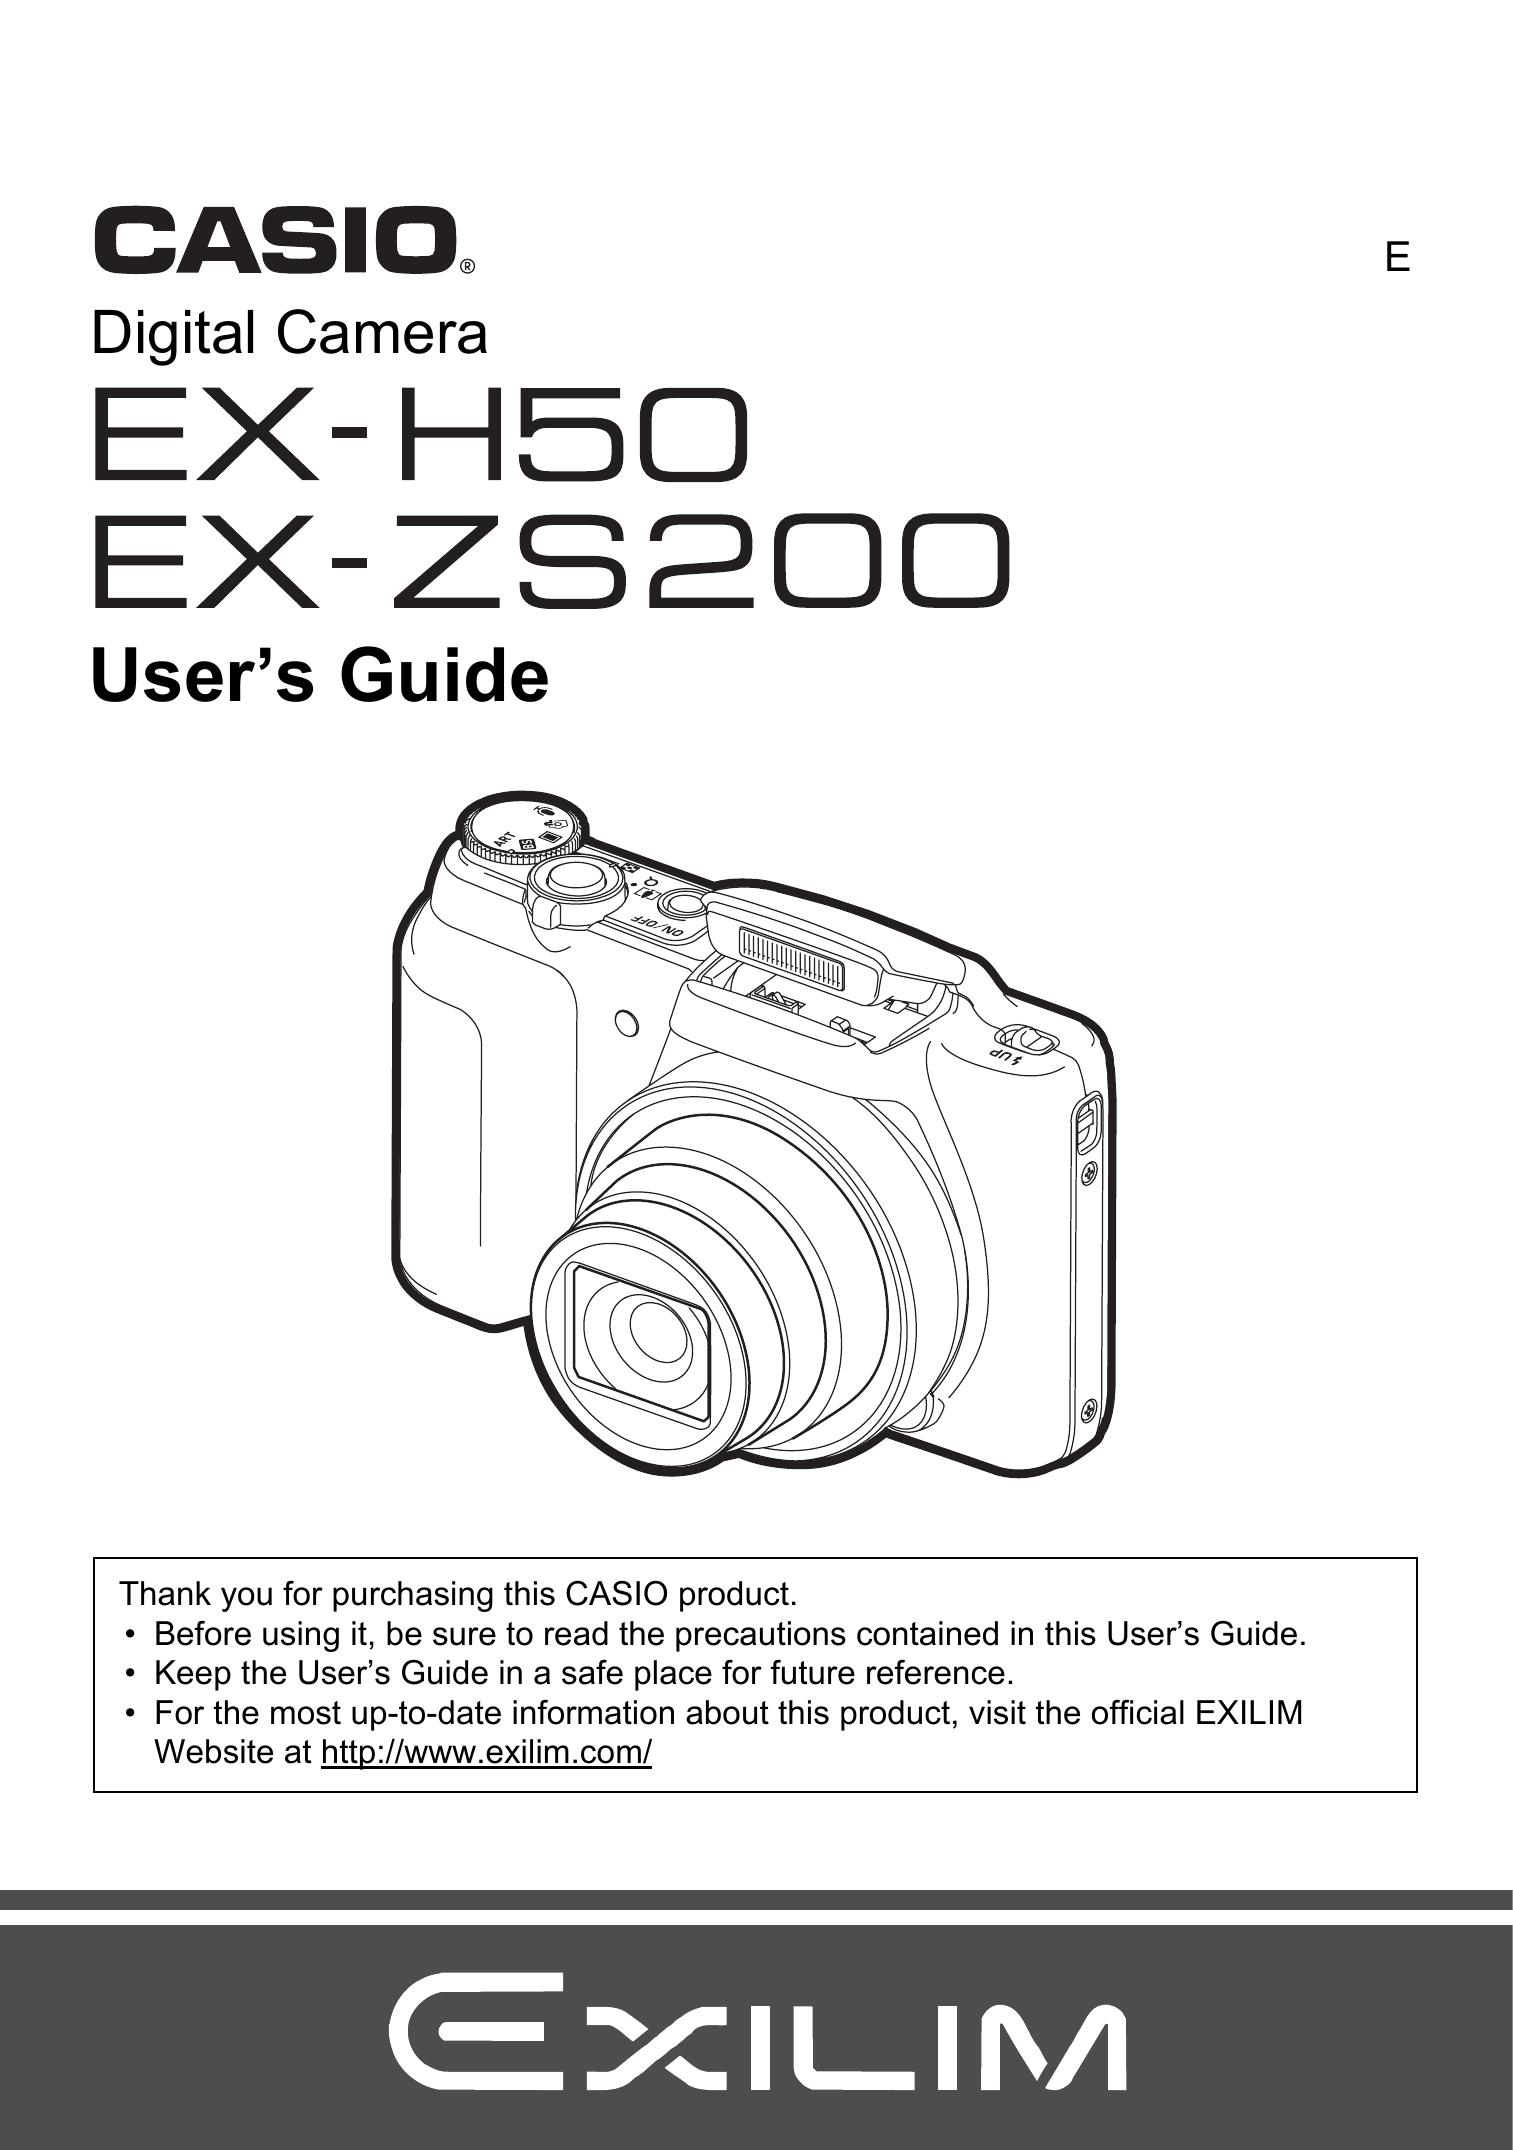 Casio EX-H50 Digital Camera User Manual